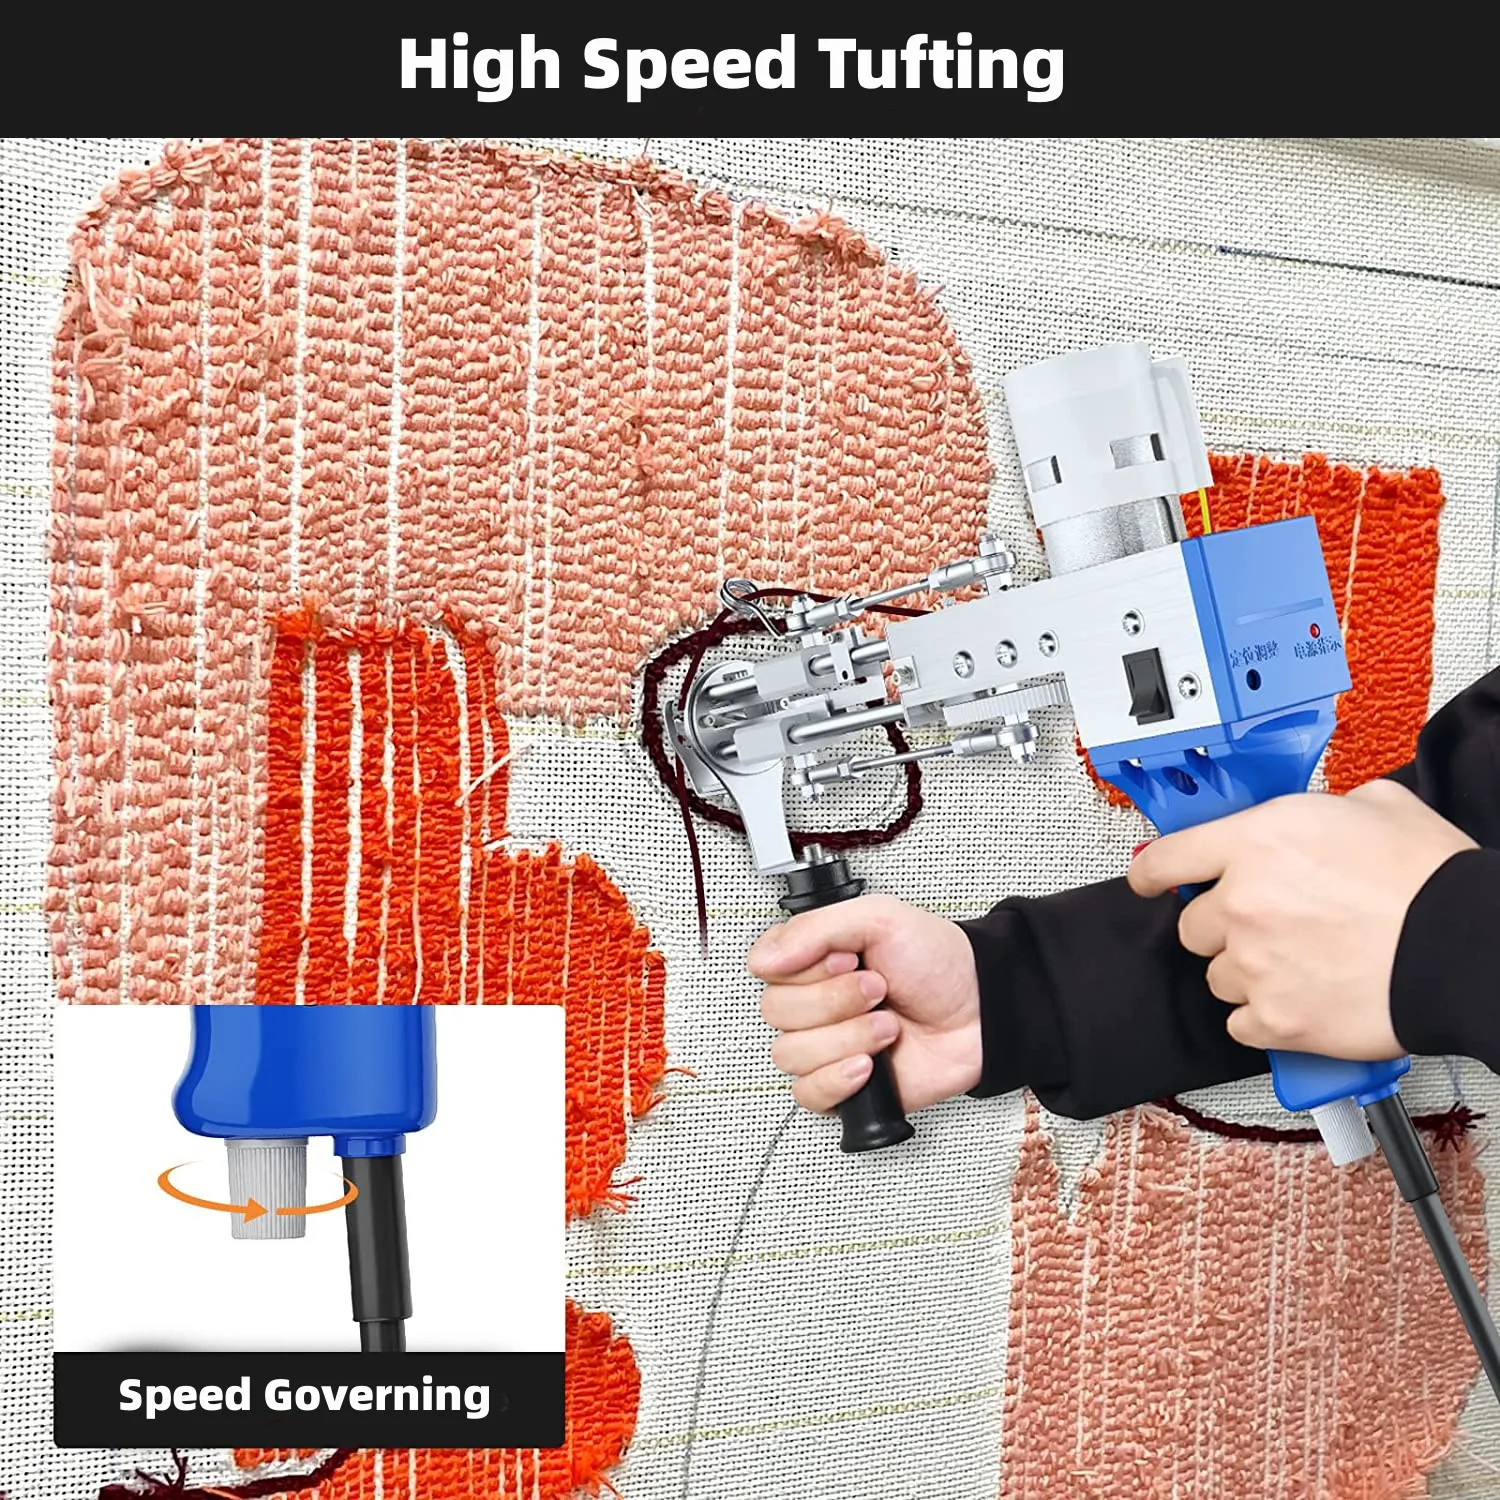 חשמלי שטיח Tufting האקדח שטיח Tufting מכונות אריגת שטיחים נוהרים מכונות שדרוג 2 ב 1 Tufting האקדח